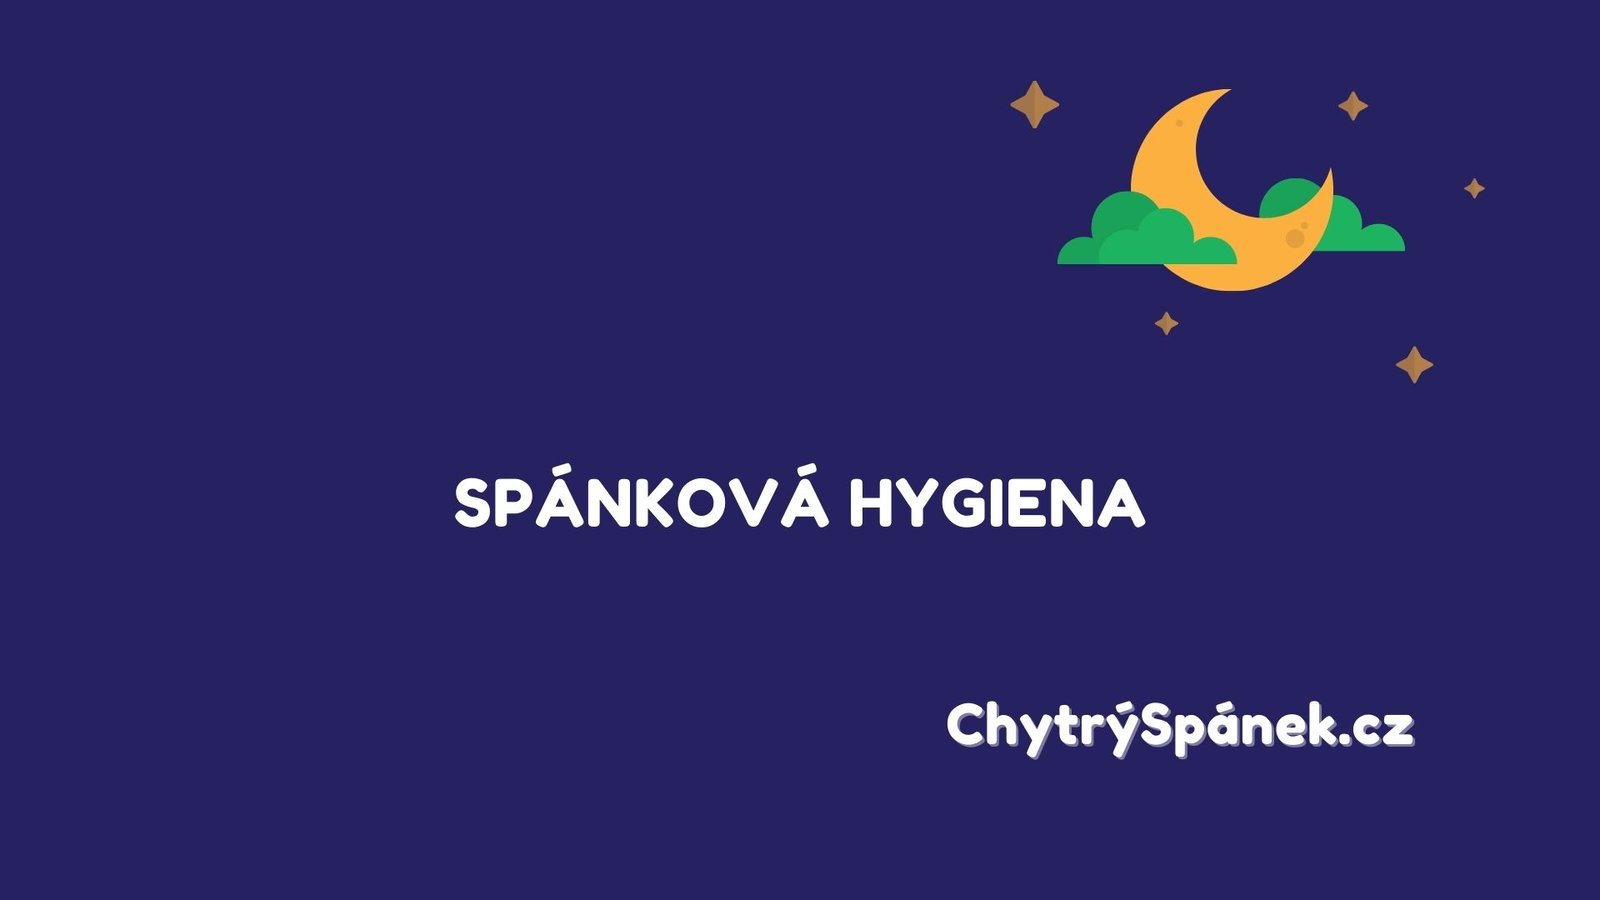 Spankova Hygiena Cover